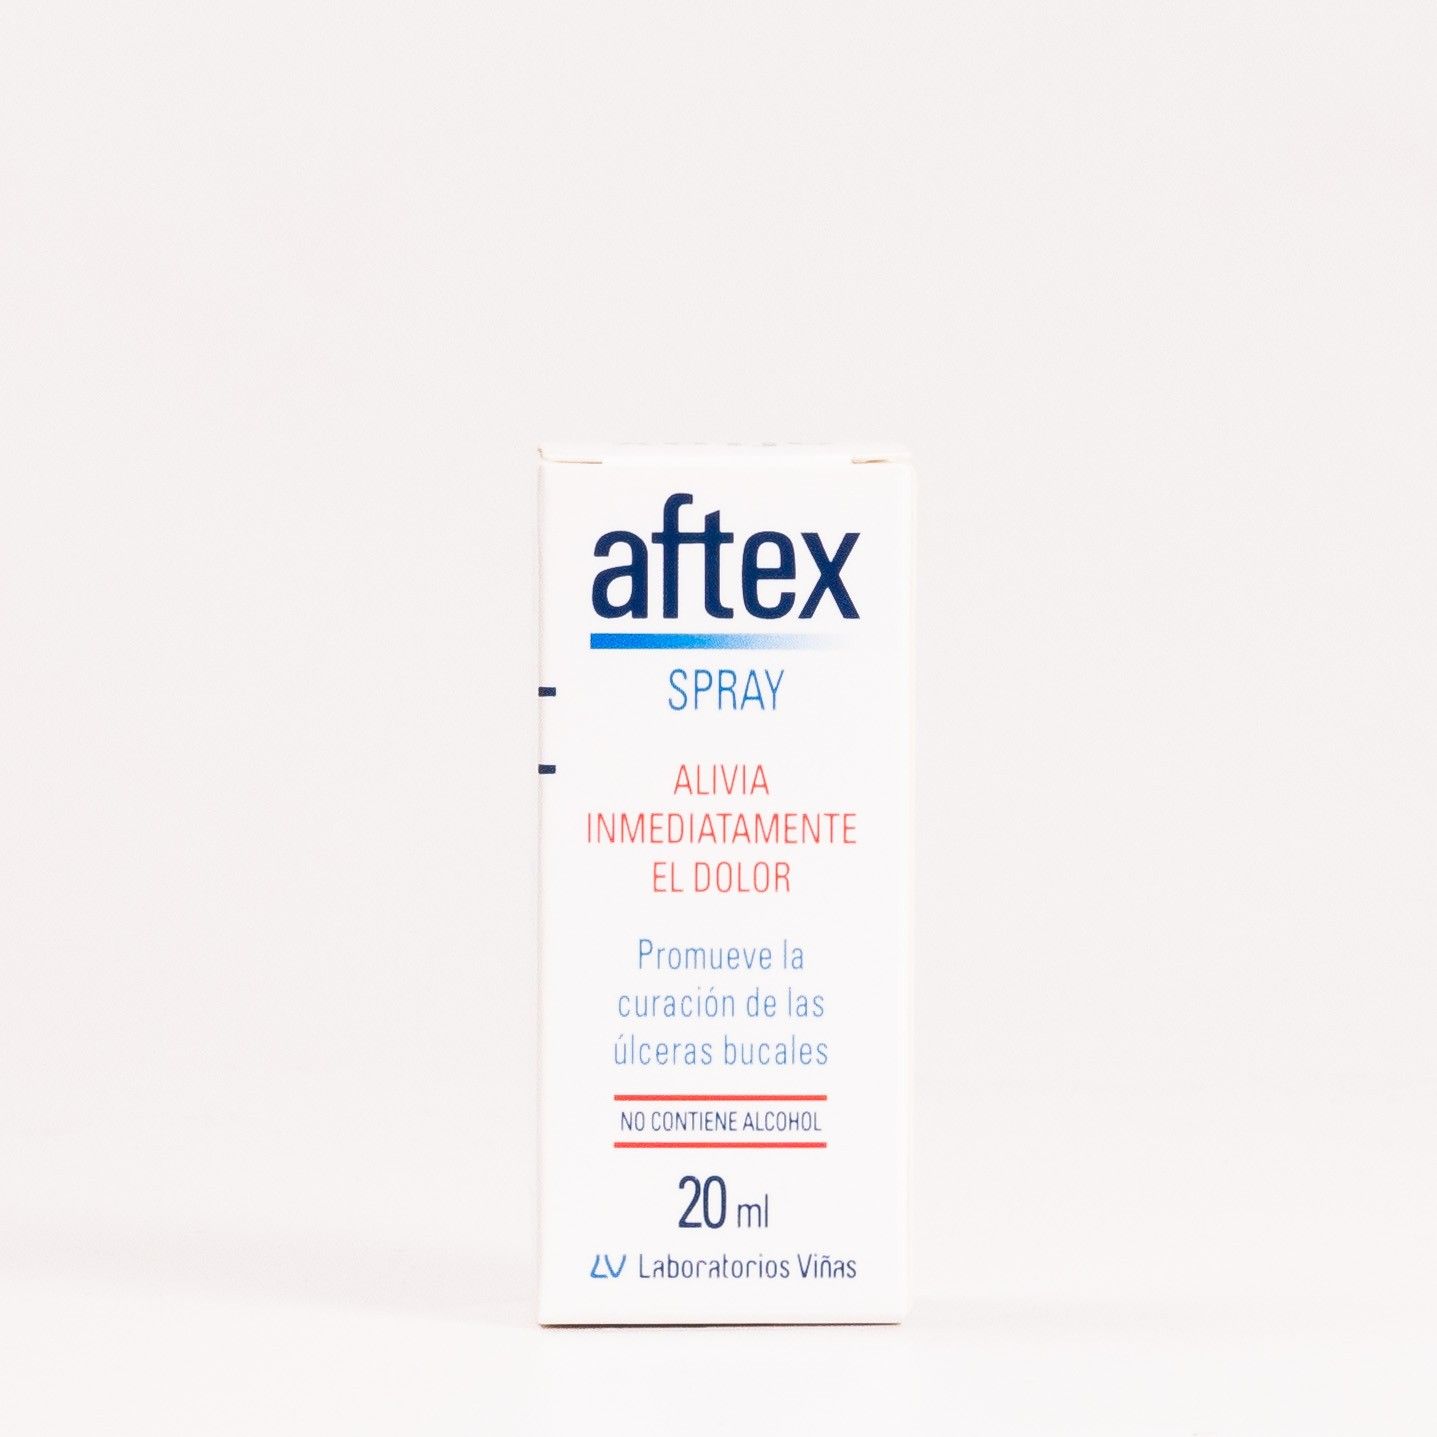 Aftex Spray, 20ml.